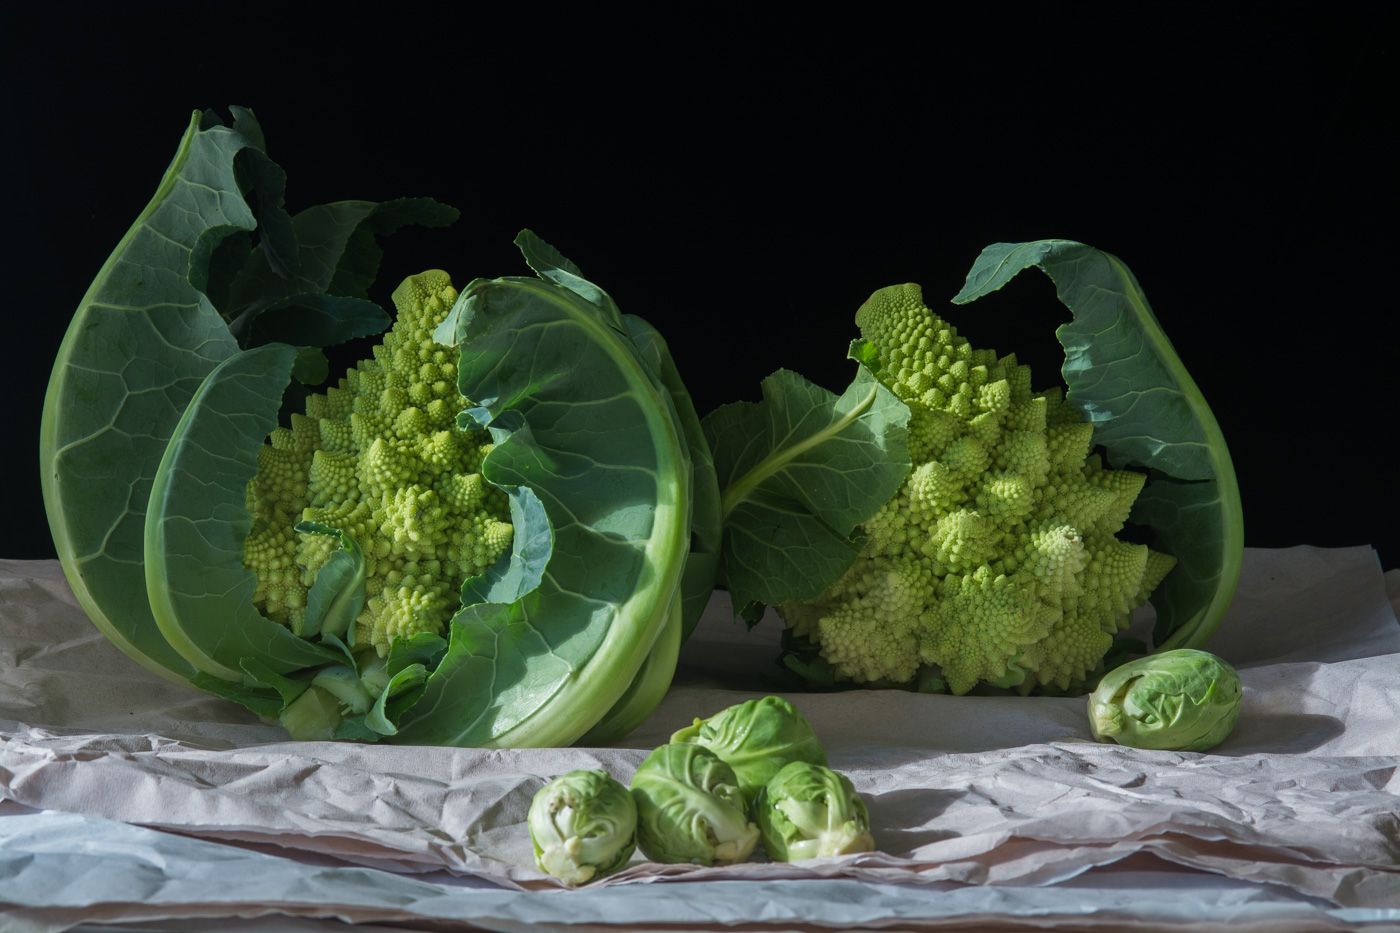 Karlin_Cauliflower & Brussel Sprouts-4.jpg